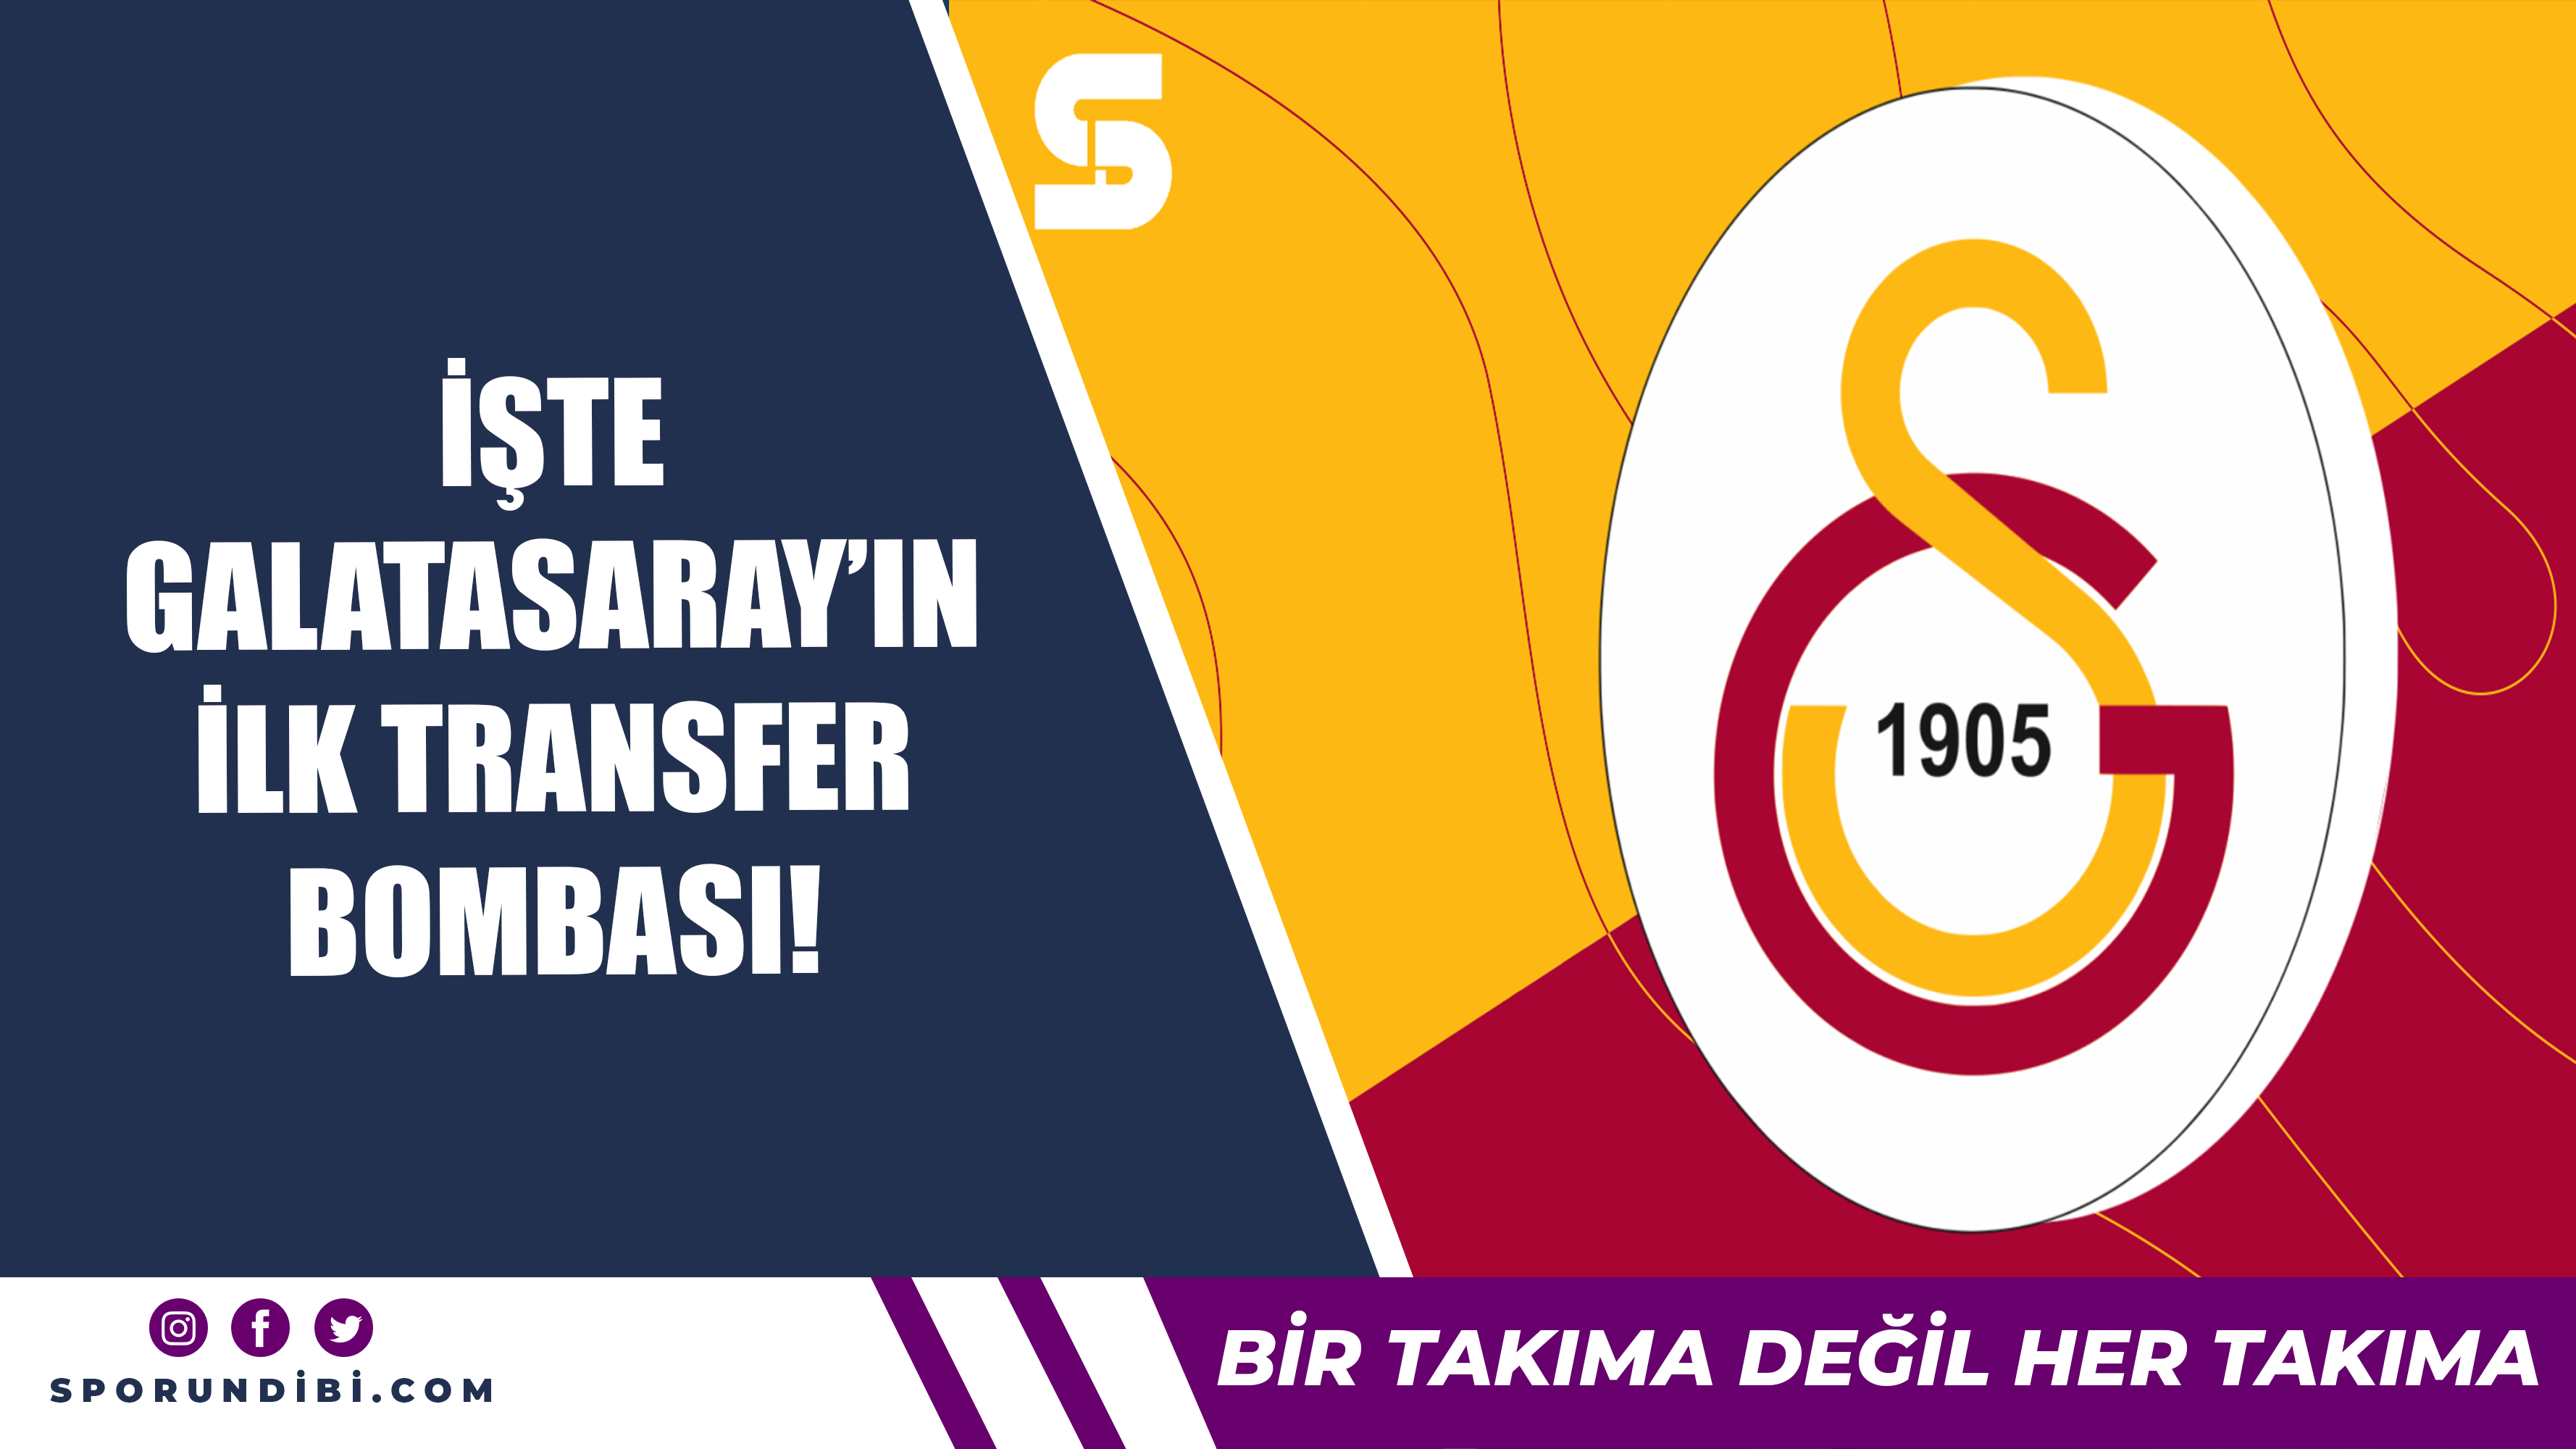 İşte Galatasaray'ın ilk transfer bombası!